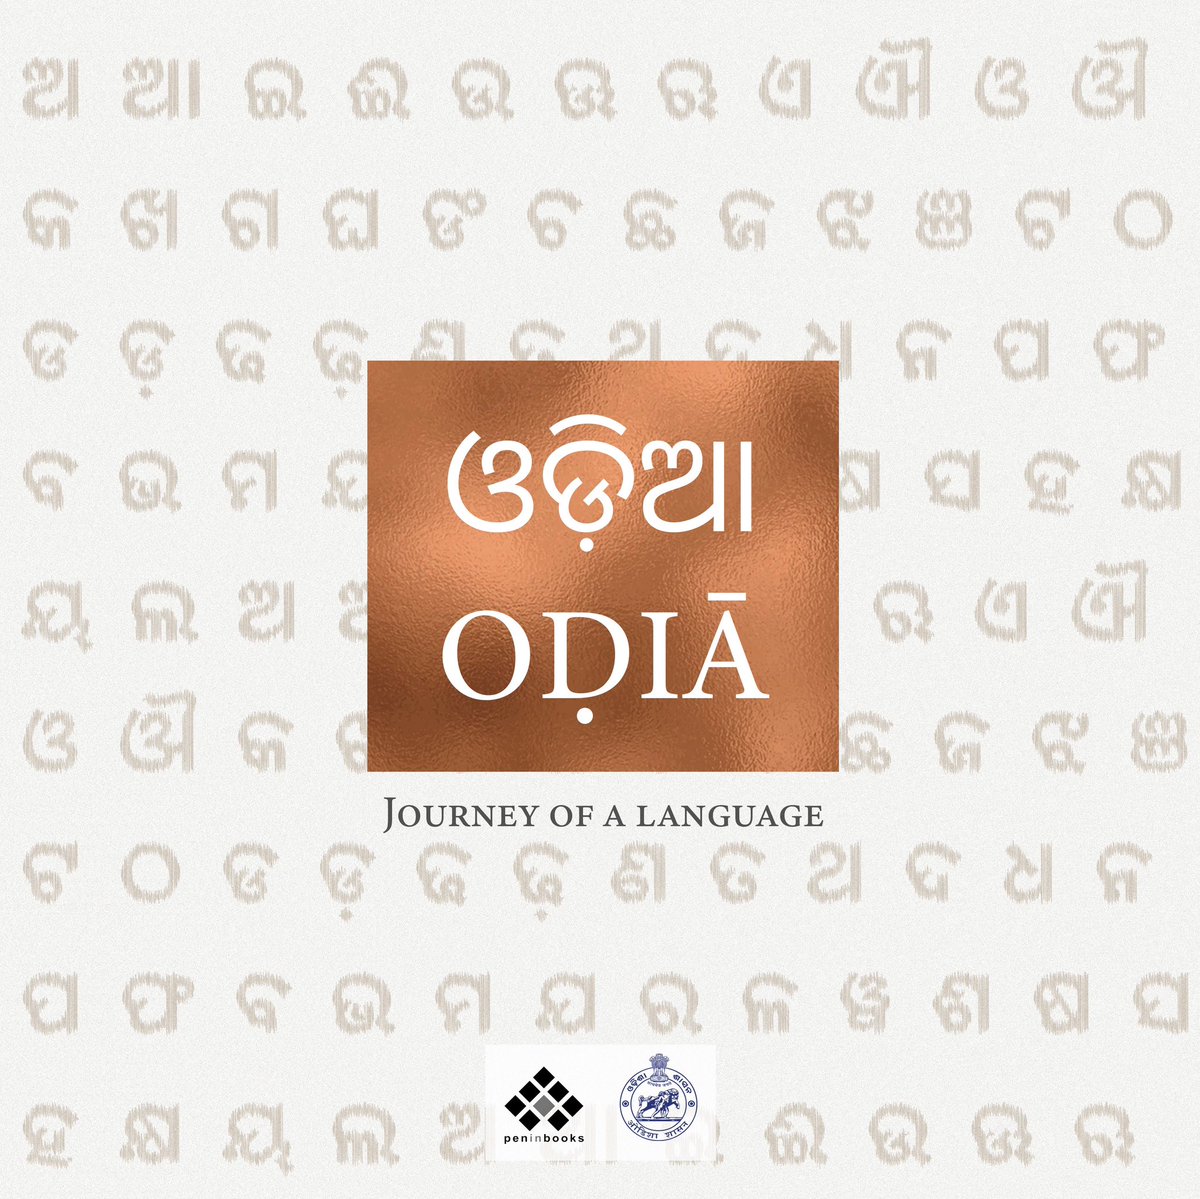 #AmazonSale #OdiaJourneyOfaLanguage ଓଡ଼ିଆ ଭାଷାର ବିକାଶ ଓ ପ୍ରଗତିକୁ ନେଇ ପ୍ରସ୍ତୁତ ନାନାଦି ବିରଳ ଚିତ୍ର, ନଥି ଓ ତଥ୍ୟ ସମ୍ବଳିତ ୨.୫ କିଲୋଗ୍ରାମ୍‌ ଓଜନ ବିଶିଷ୍ଟ ପ୍ରାୟ ୨୫୦ ପୃଷ୍ଠାର ସୁଦୃଶ୍ୟ ଦ୍ବିଭାଷୀ ଚିତ୍ରପୋଥି 'ଓଡ଼ିଆ: ଜର୍ଣି ଅଫ୍‌ ଏ ଲାଙ୍ଗୁଏଜ୍' This book is an ode to the rich legacy of the Odia